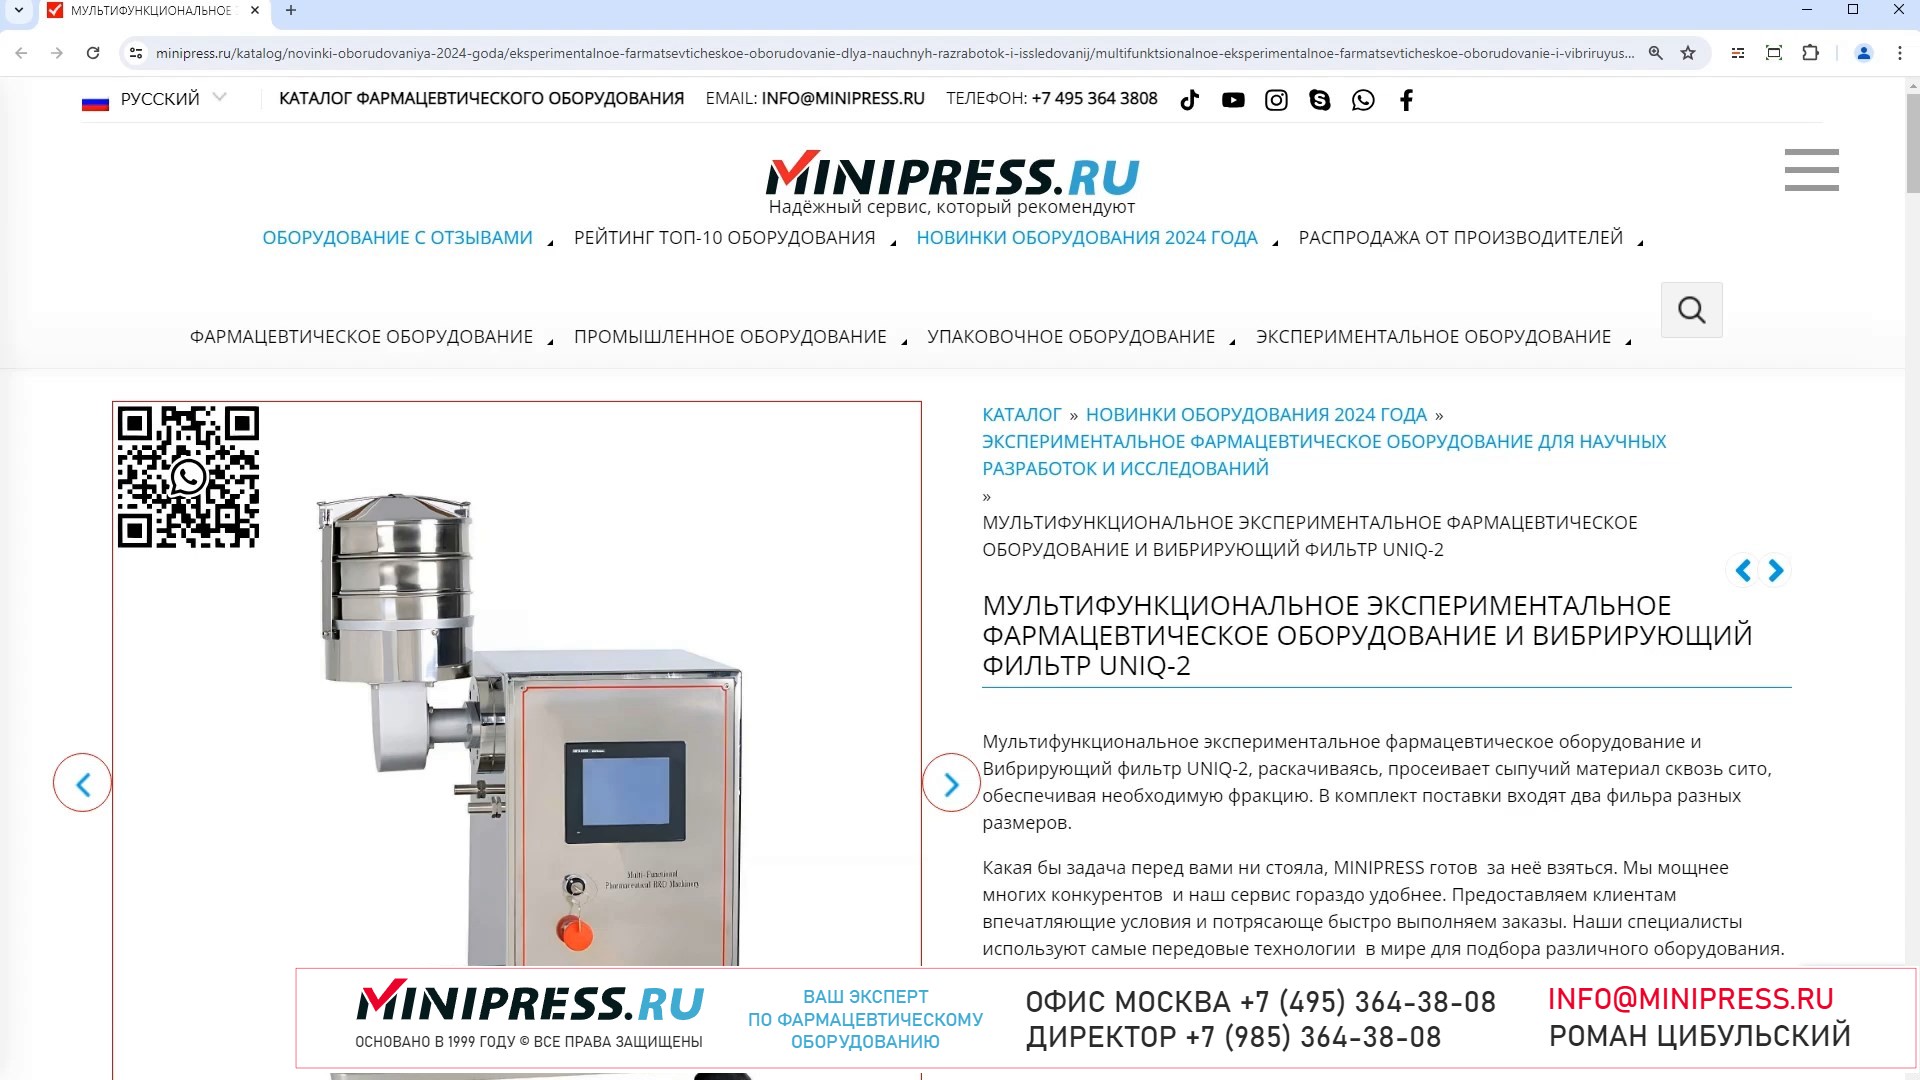 Minipress.ru Мультифункциональное экспериментальное фармацевтическое оборудование и Вибрирующий филь